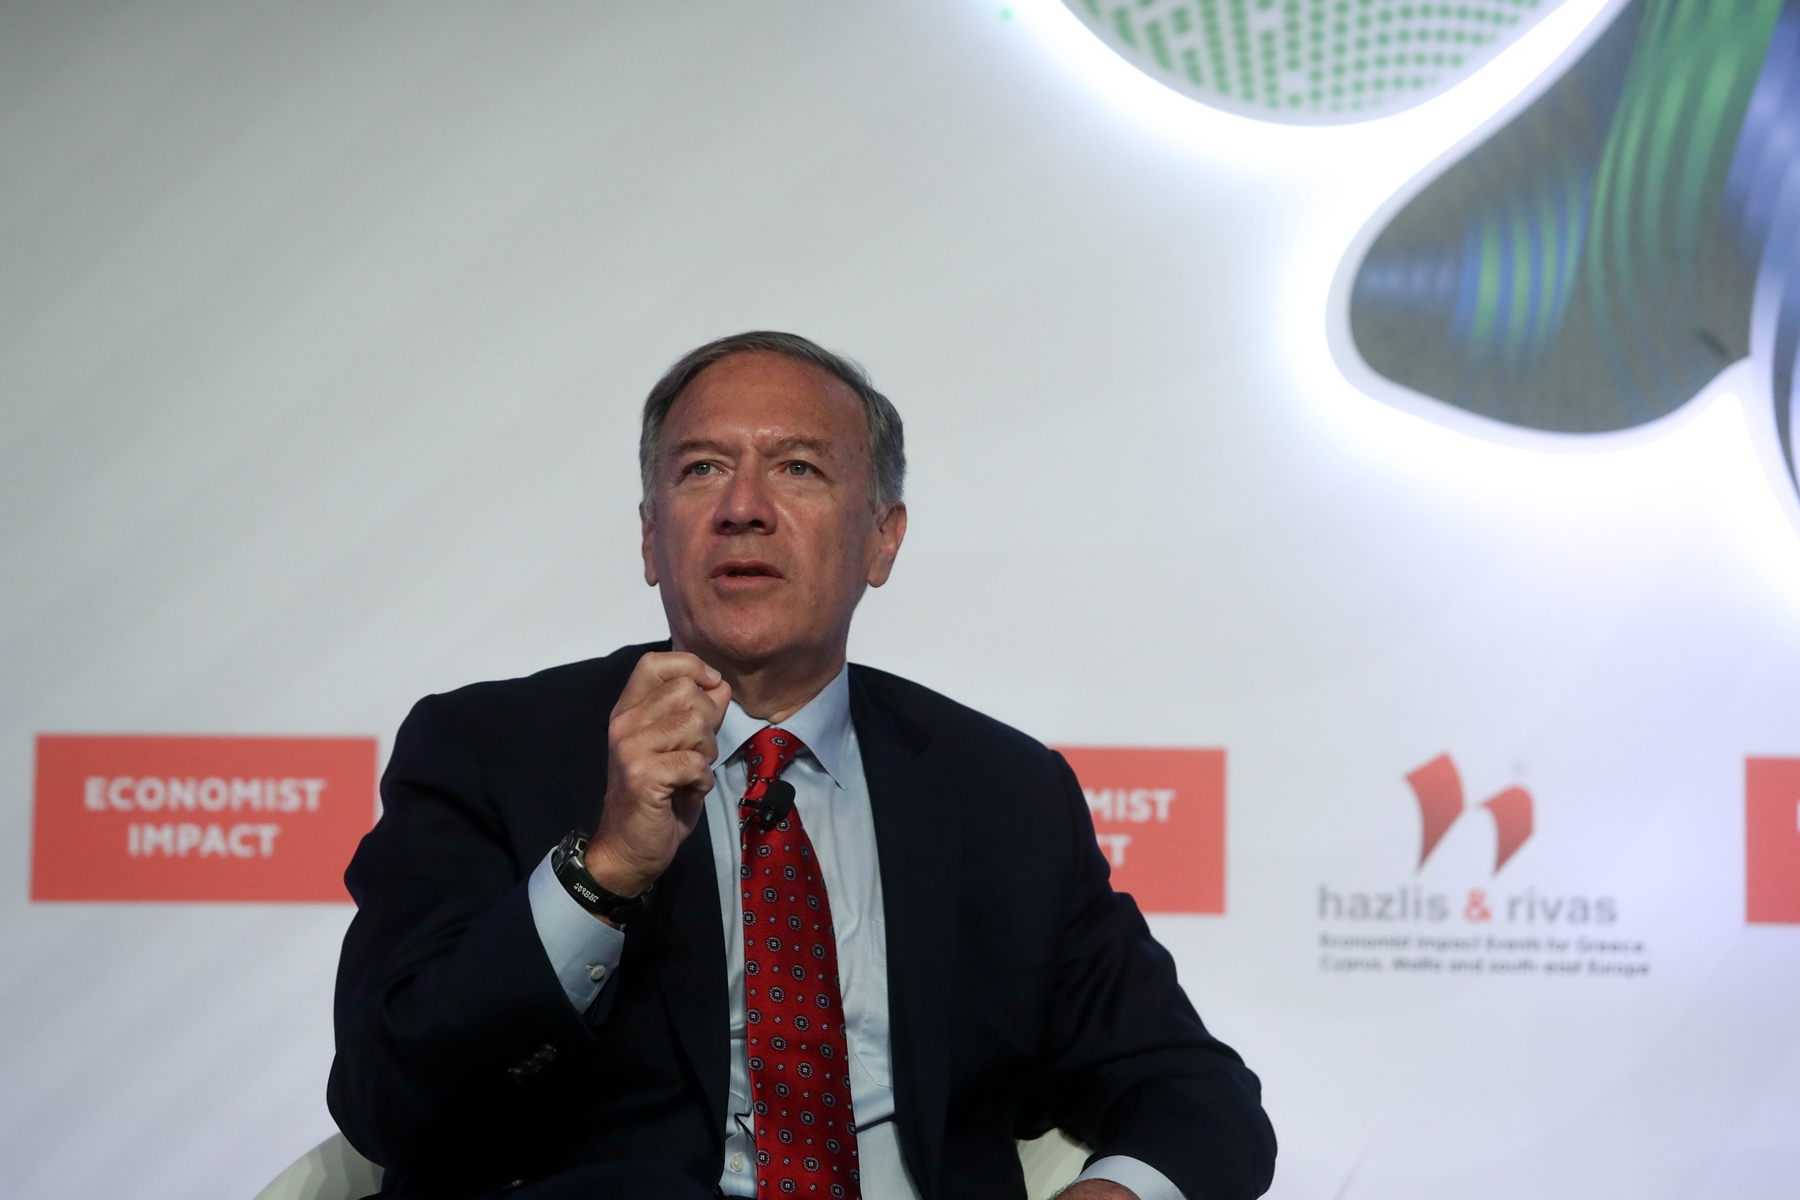 Πομπέο – συνέδριο Economist 2022: “Οι διαφορές να λύνονται πάντα με διάλογο”